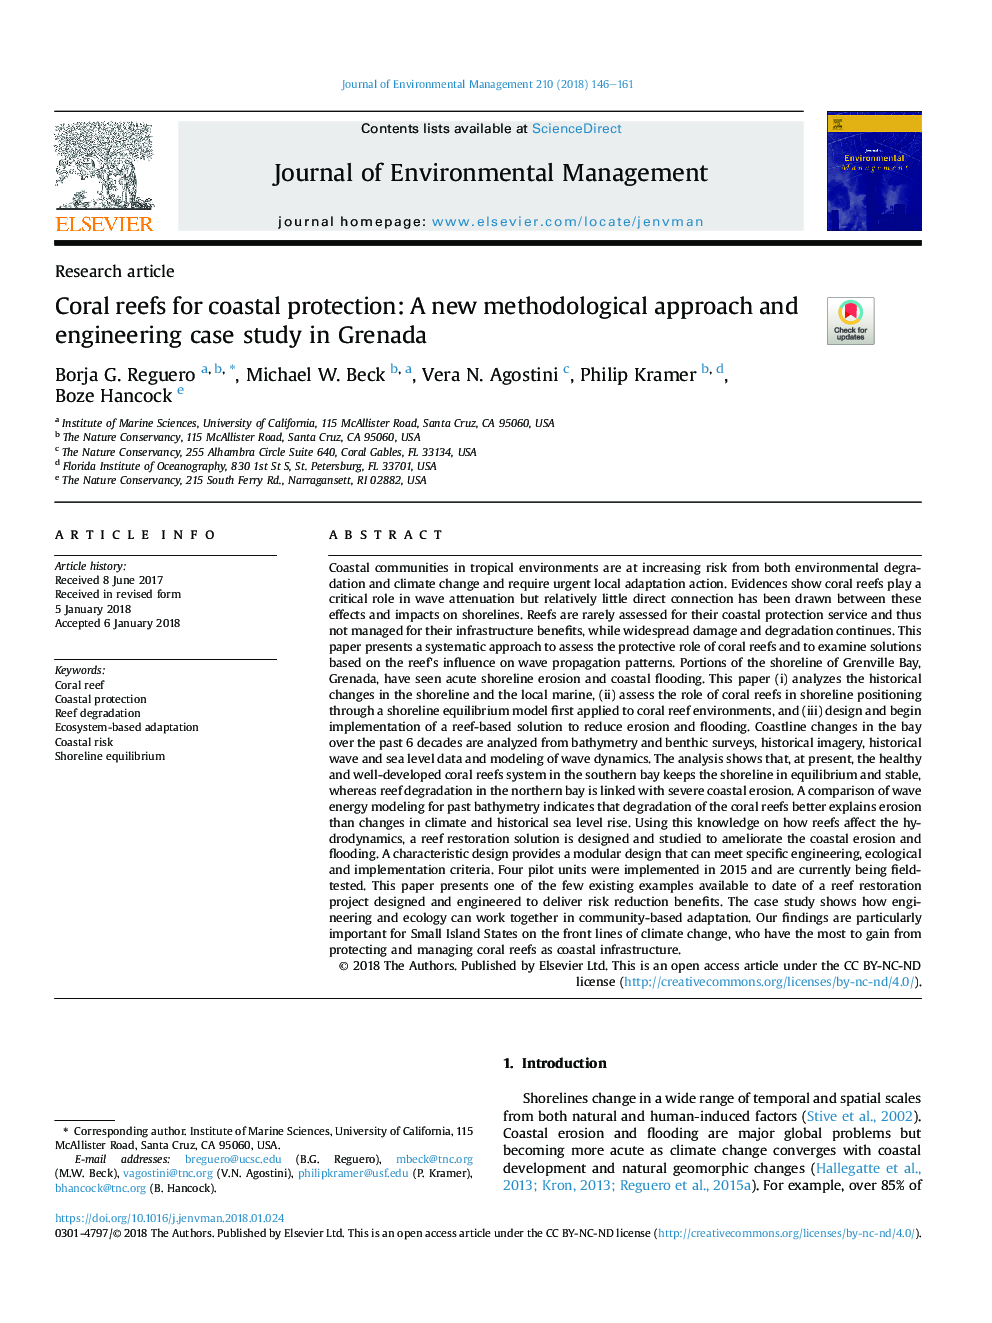 صخره های مرجانی برای حفاظت ساحلی: روش جدید روش شناسی و مطالعه موردی مهندسی در گرانادا 